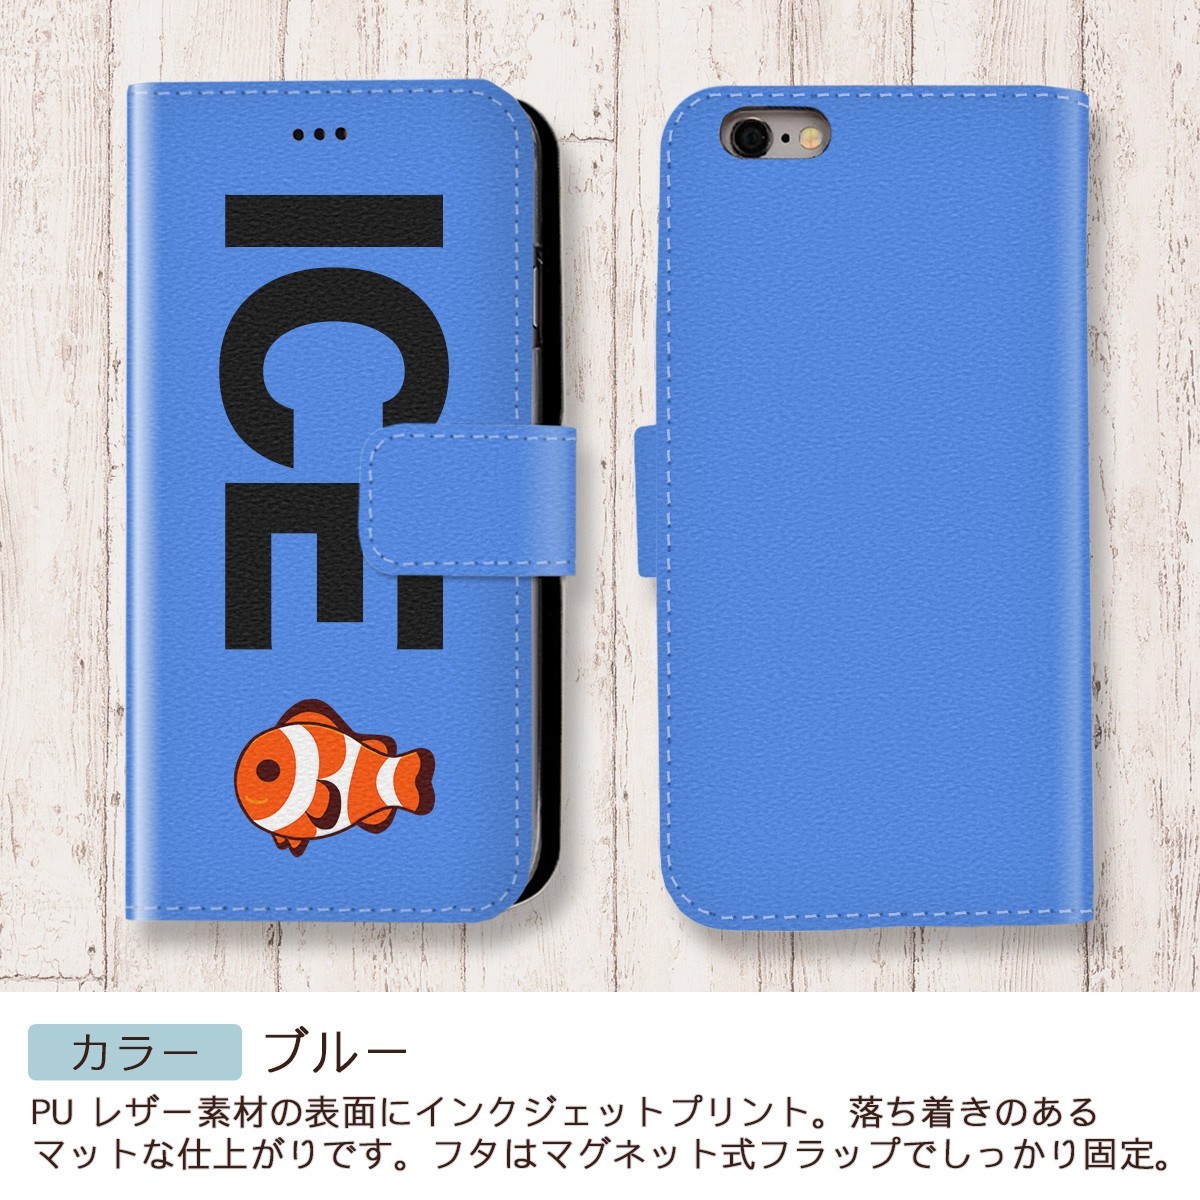 カクレクマノミ 魚 おもしろ X XSケース ケース iPhone X iPhone XS ケース 手帳型 アイフォン かわいい カッコイイ メンズ レ_画像4